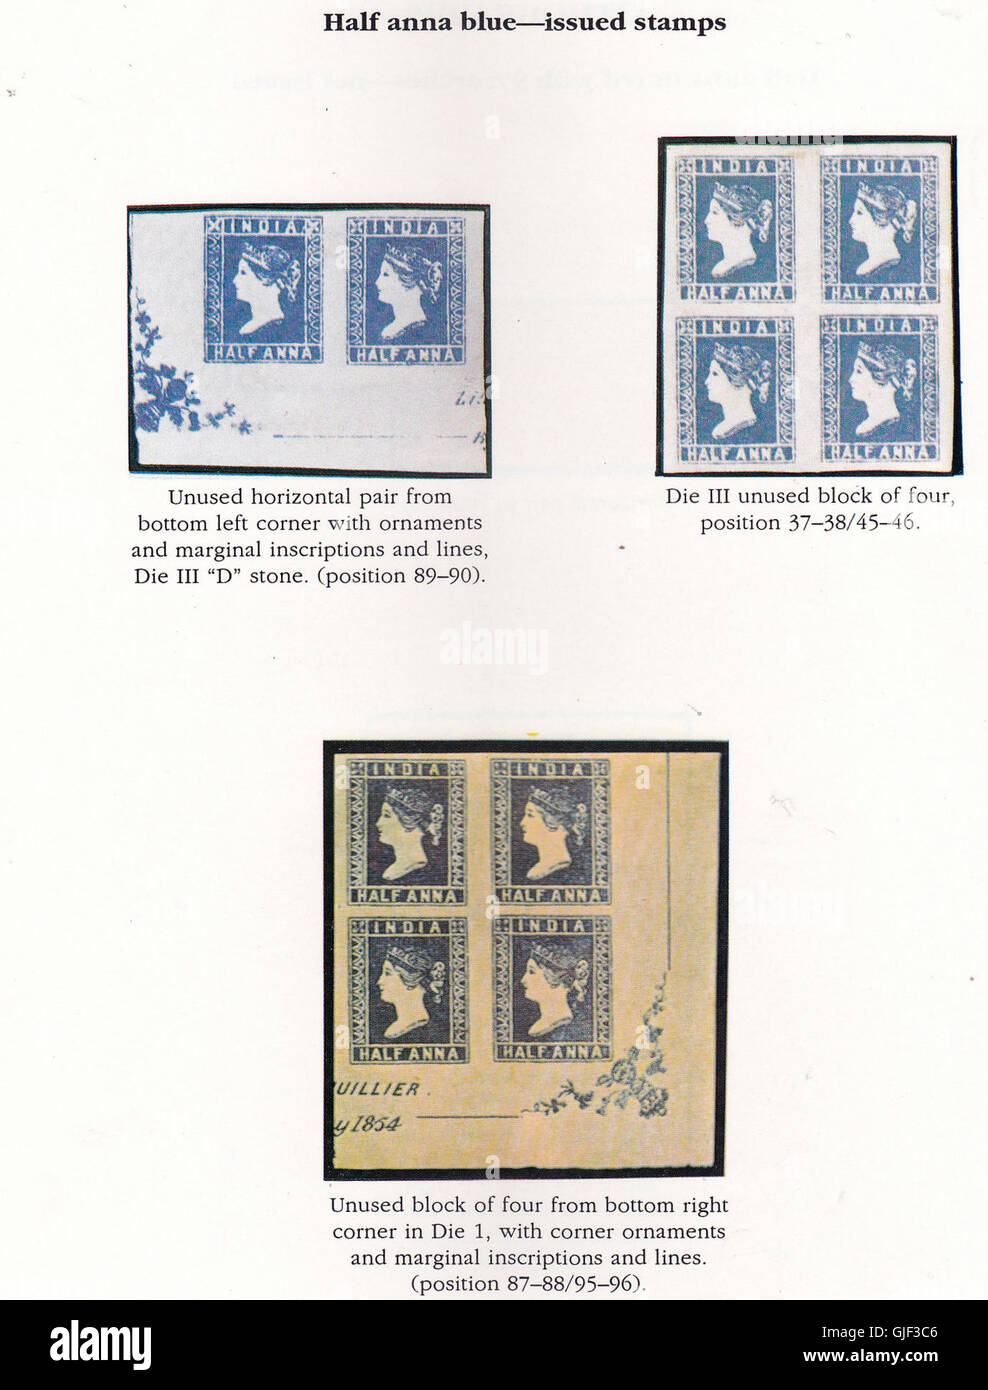 Geschichte des ersten Freimarke mit Snap Stempel Issed in Indien ausgestellt. Stempel einer Ana. Stockfoto